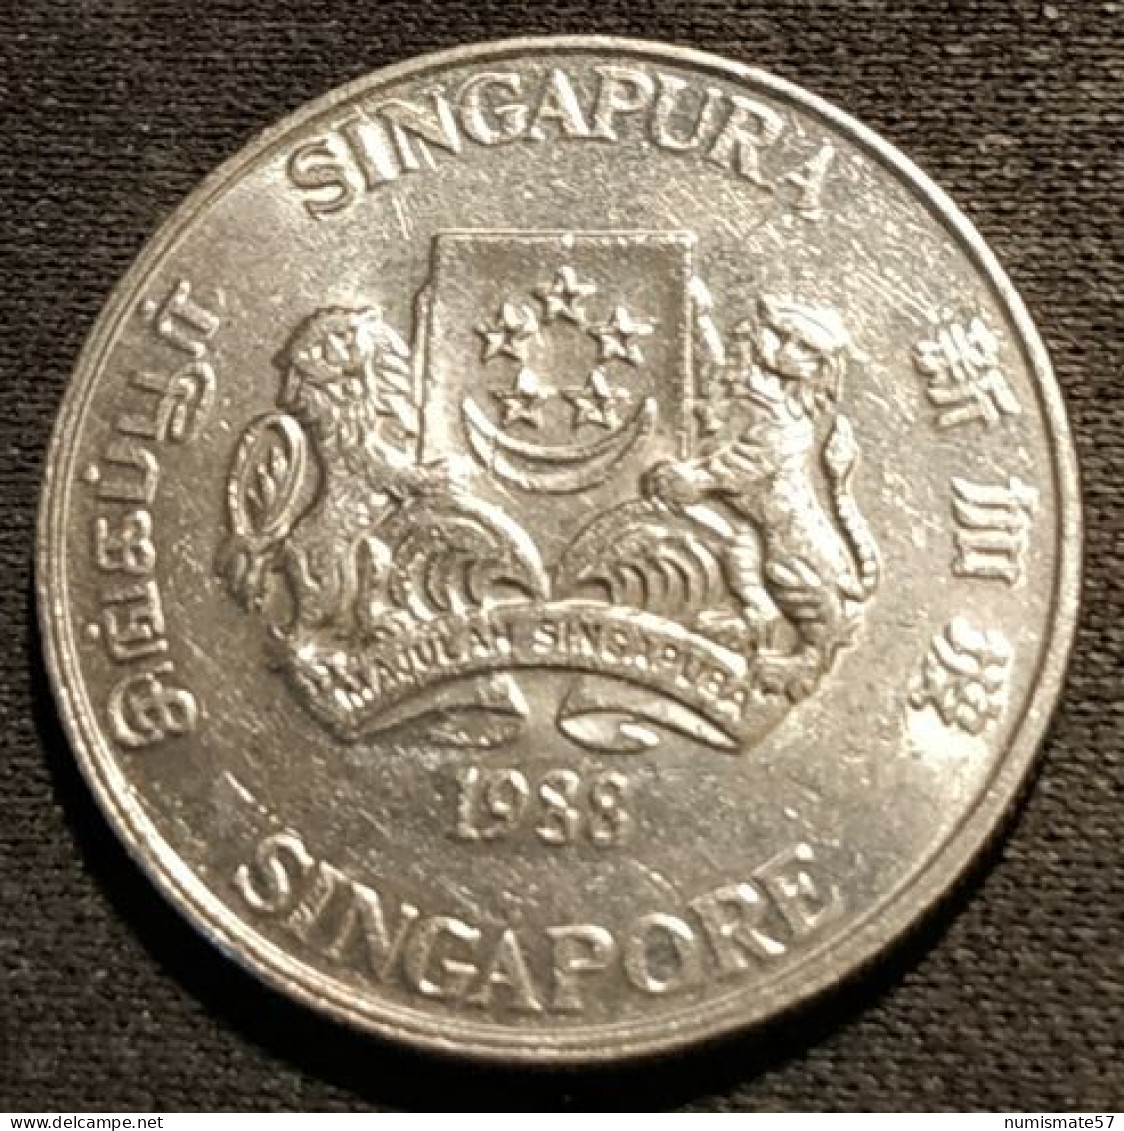 SINGAPOUR - SINGAPORE - 20 CENTS 1988 - KM 52 - ( Blason Haut ) - Singapur